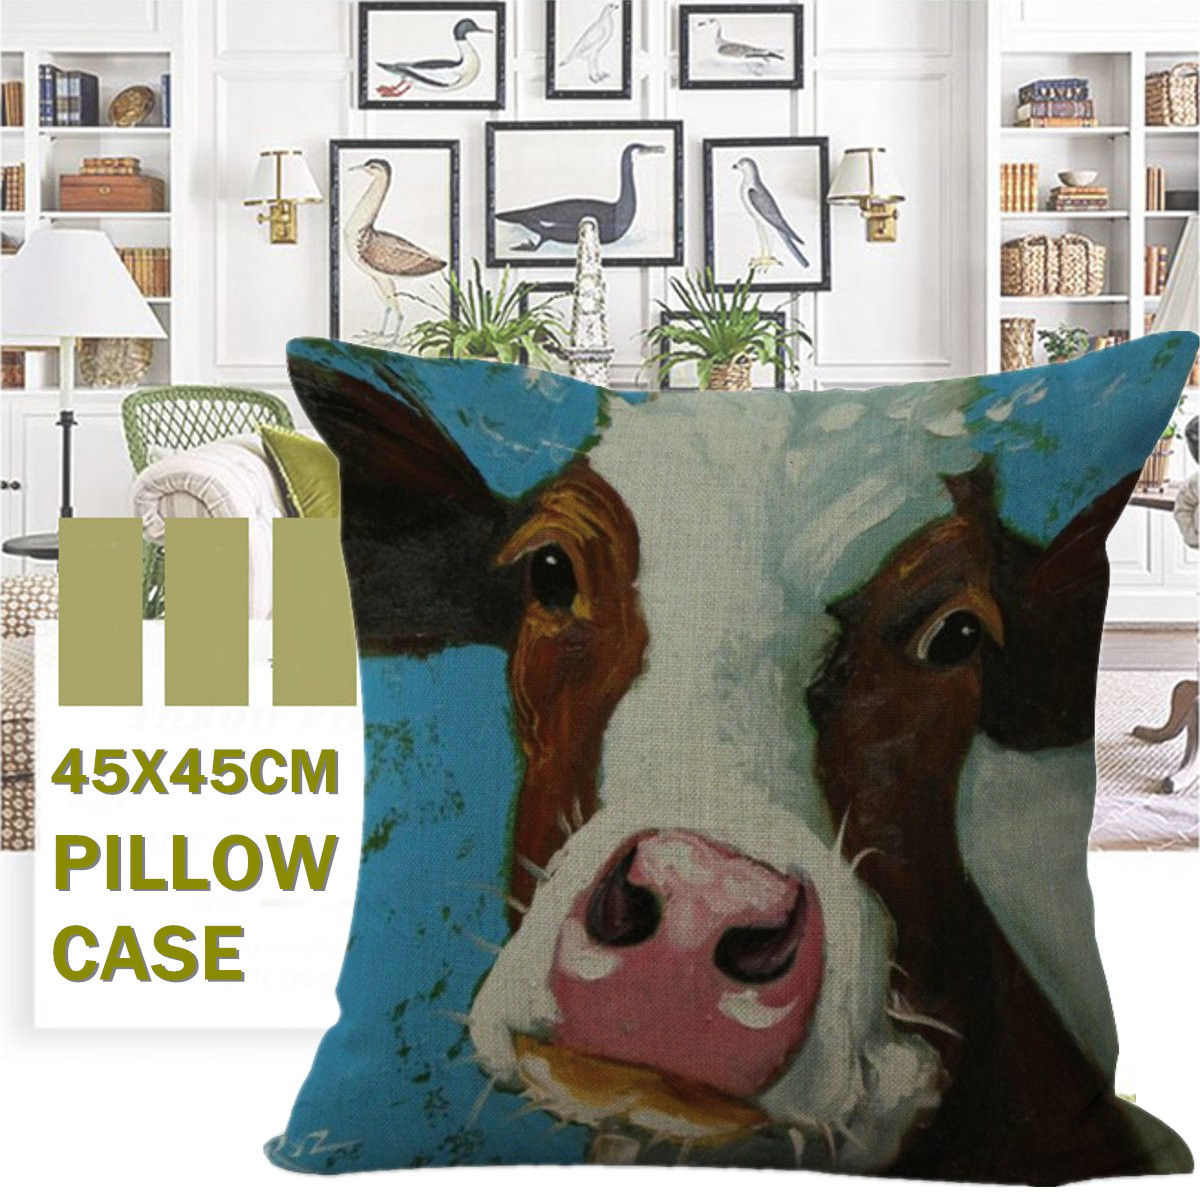 45x45cm-Vintage-Cow-Head-Print-Cotton-And-Linen-Sofa-Soft-Cushion-Bed-Decoration-Pillow-Case-1809082-1